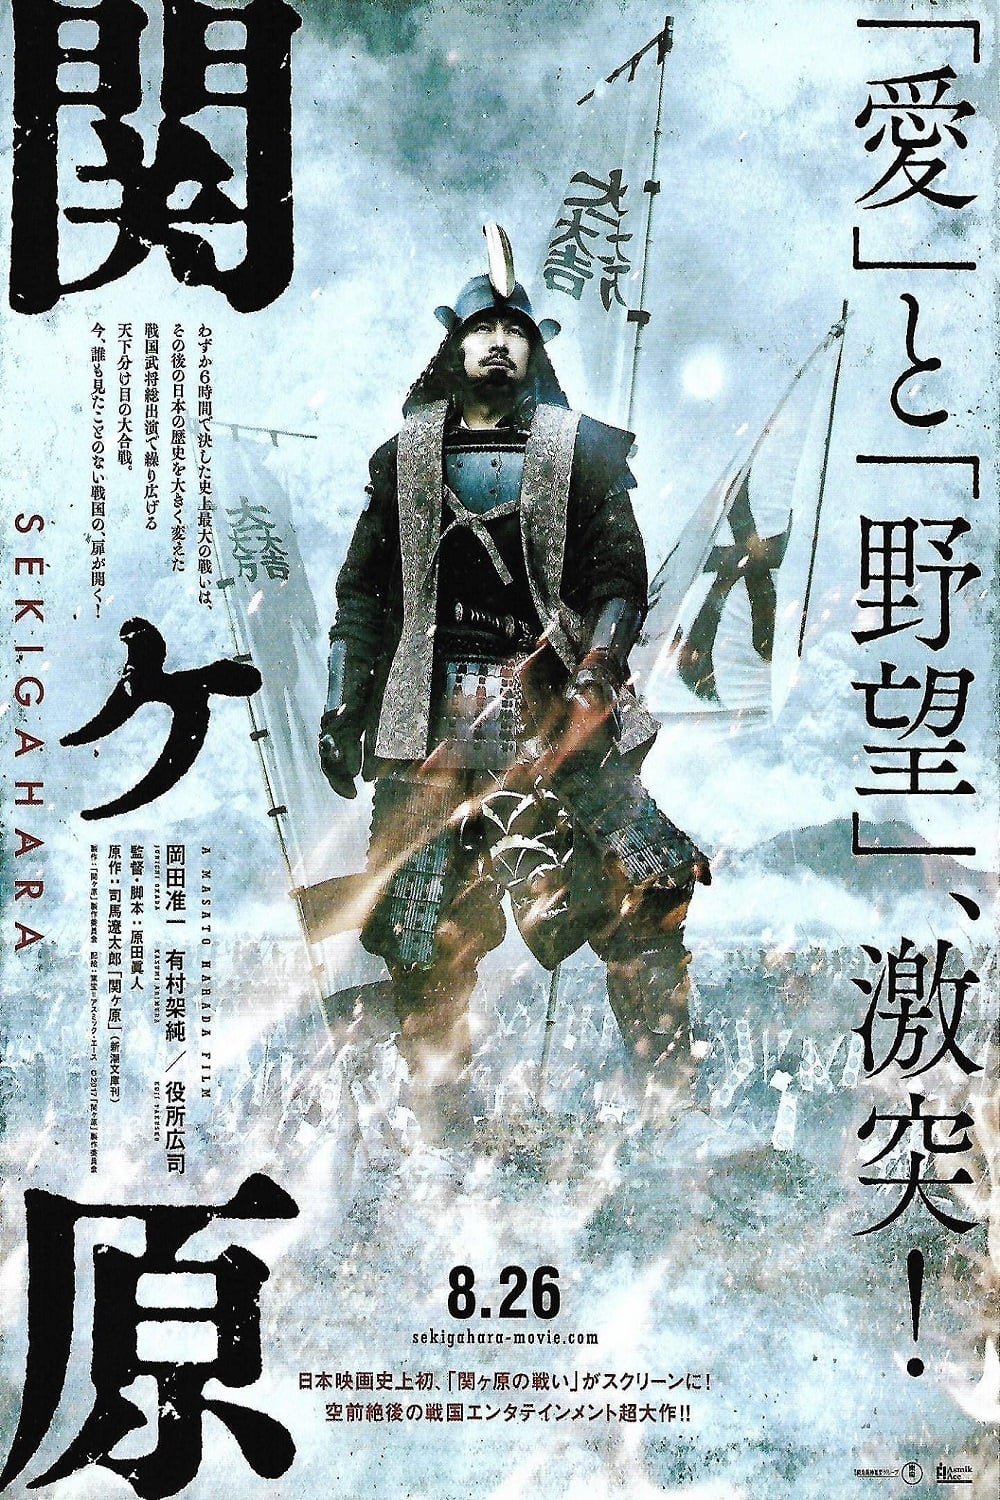 دانلود فیلم Sekigahara 2017